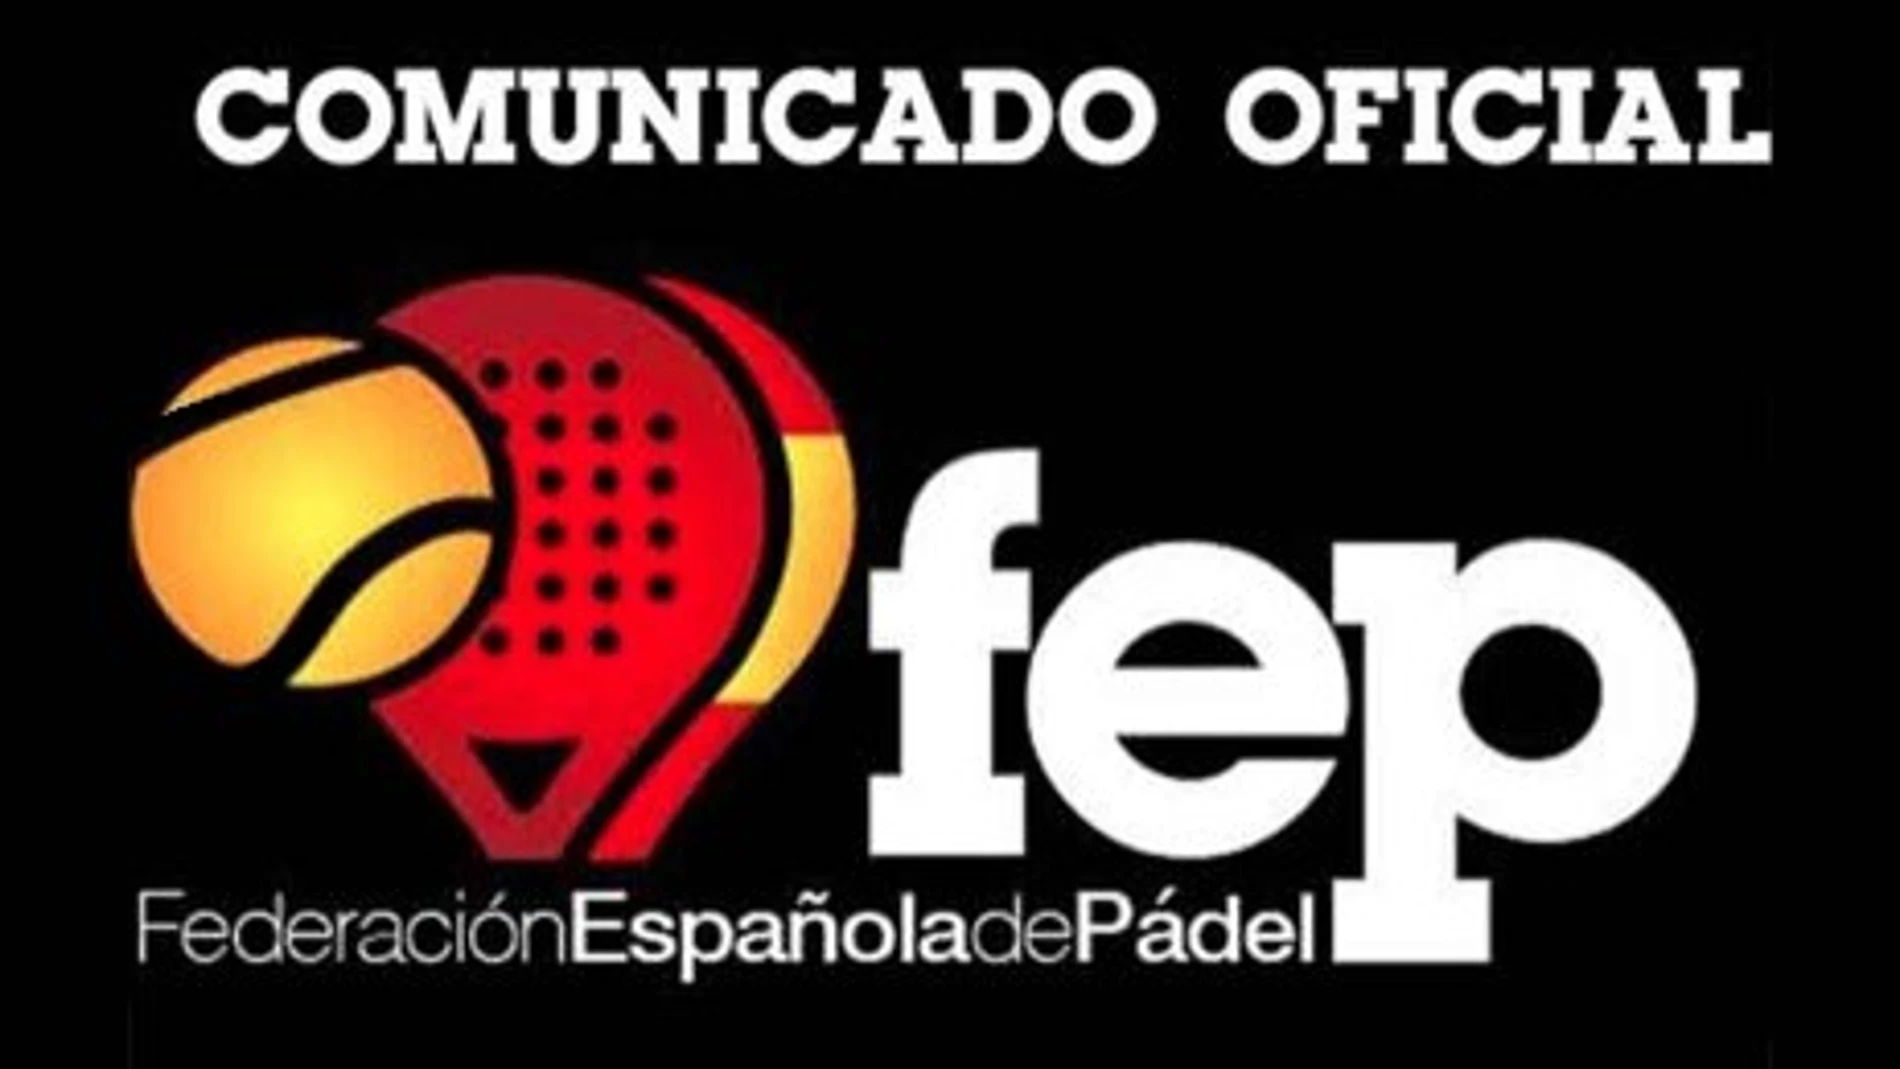 Federación Española de Pádel